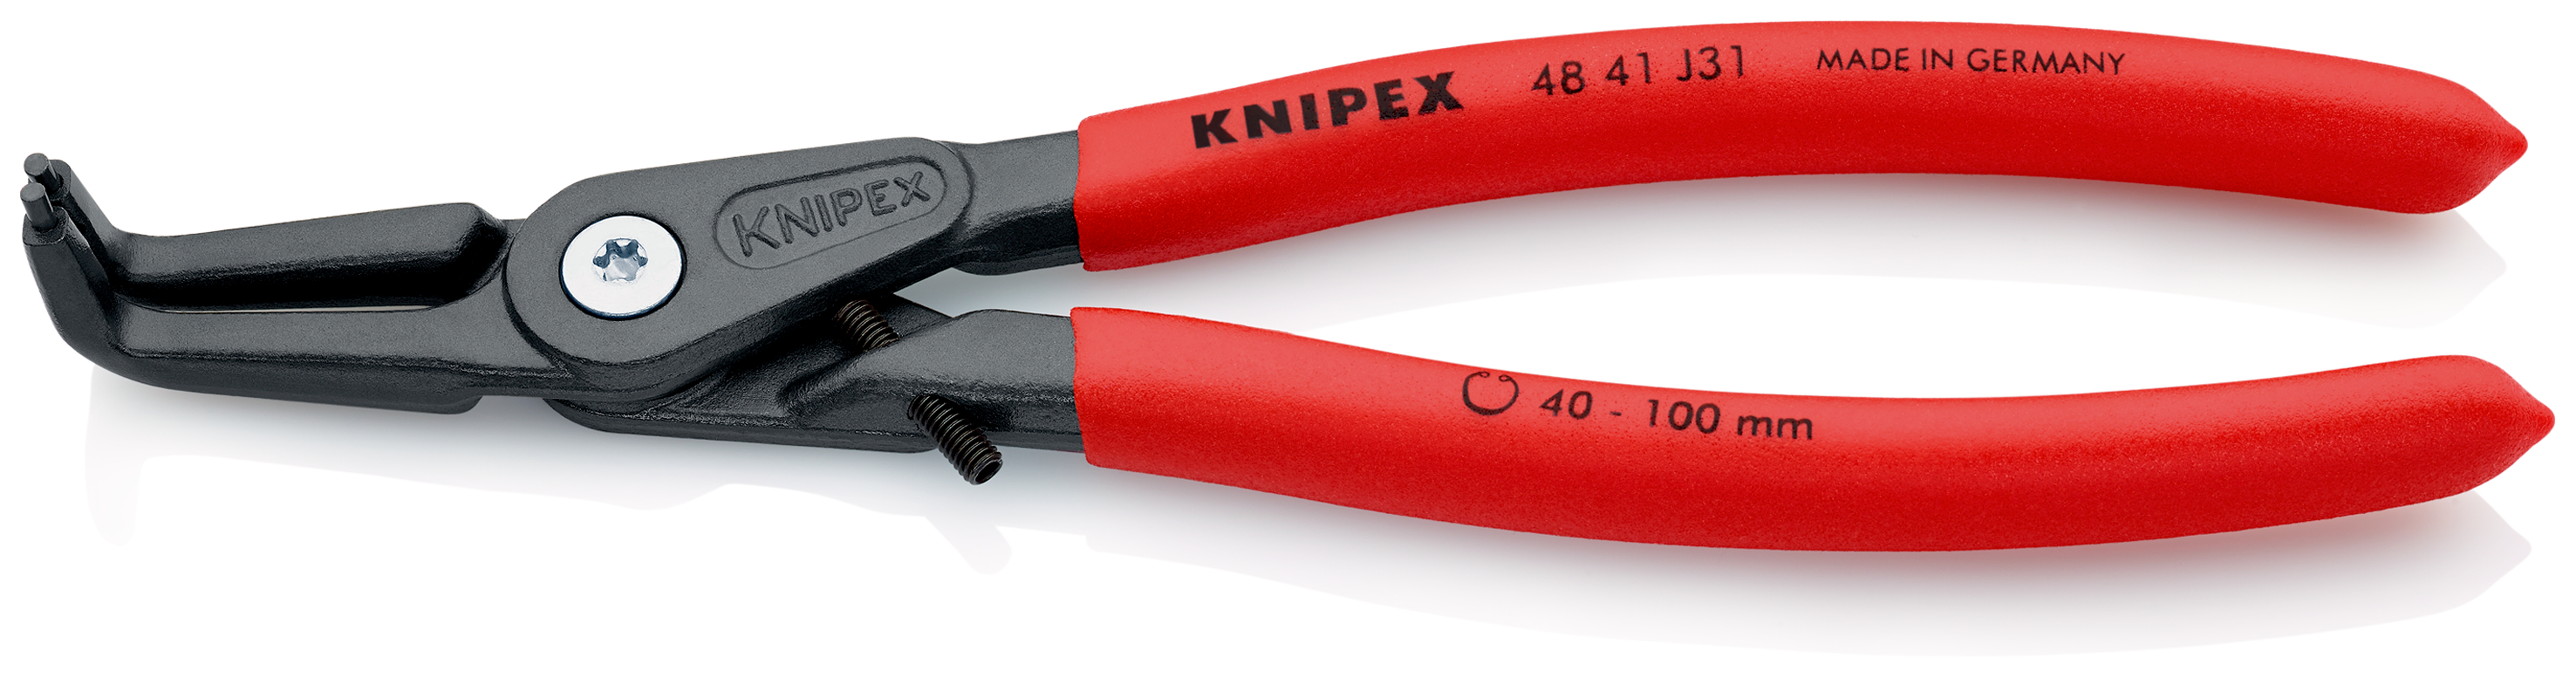 Knipex 4841J31 Cleste pentru inele de siguranta de interior, lungime 210 mm